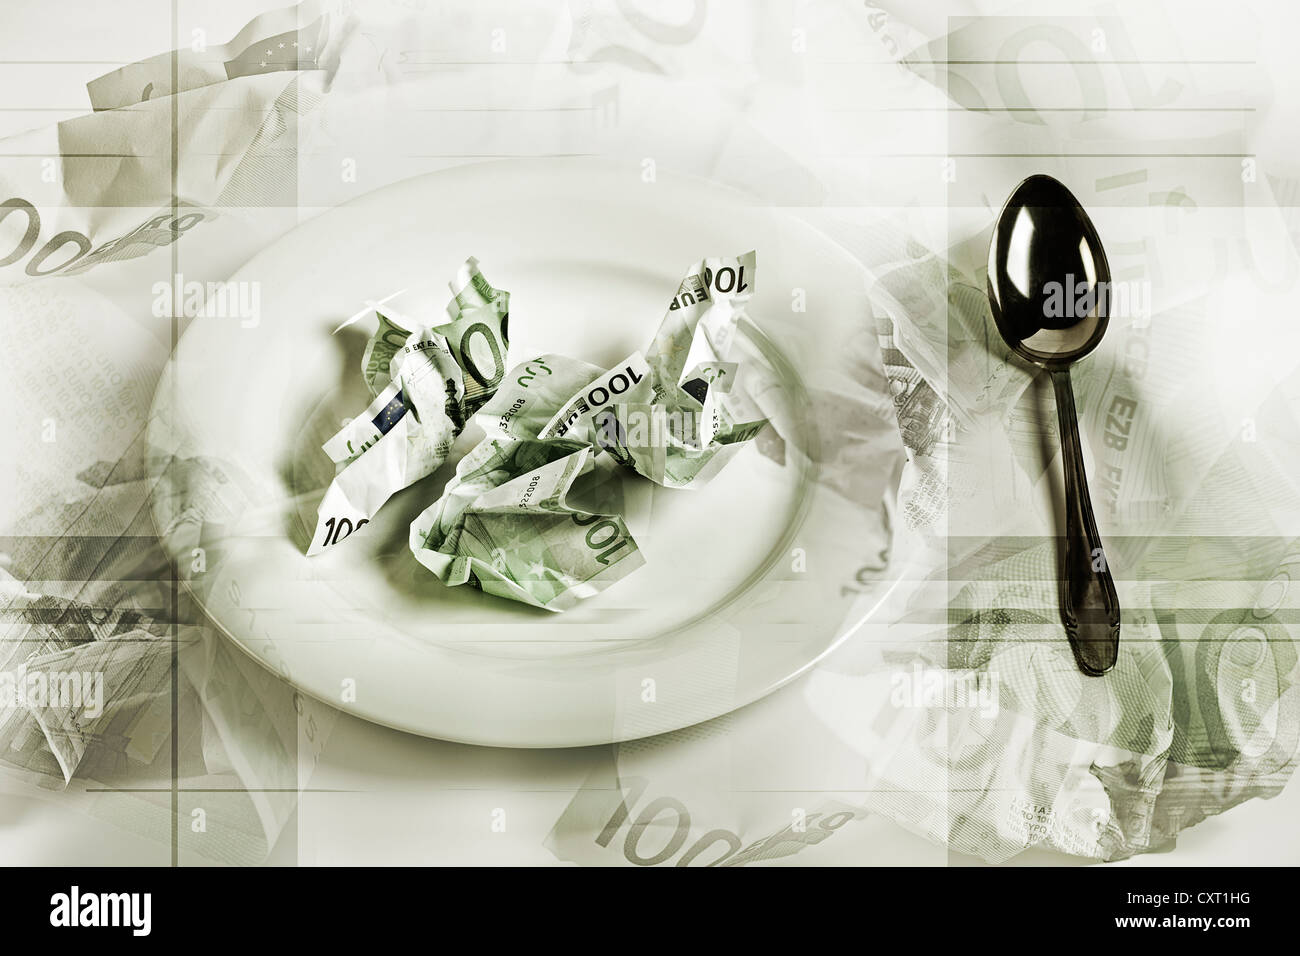 Crumpled di banconote in euro su una piastra con un cucchiaio, immagini simboliche per 'non si può mangiare denaro". Foto Stock